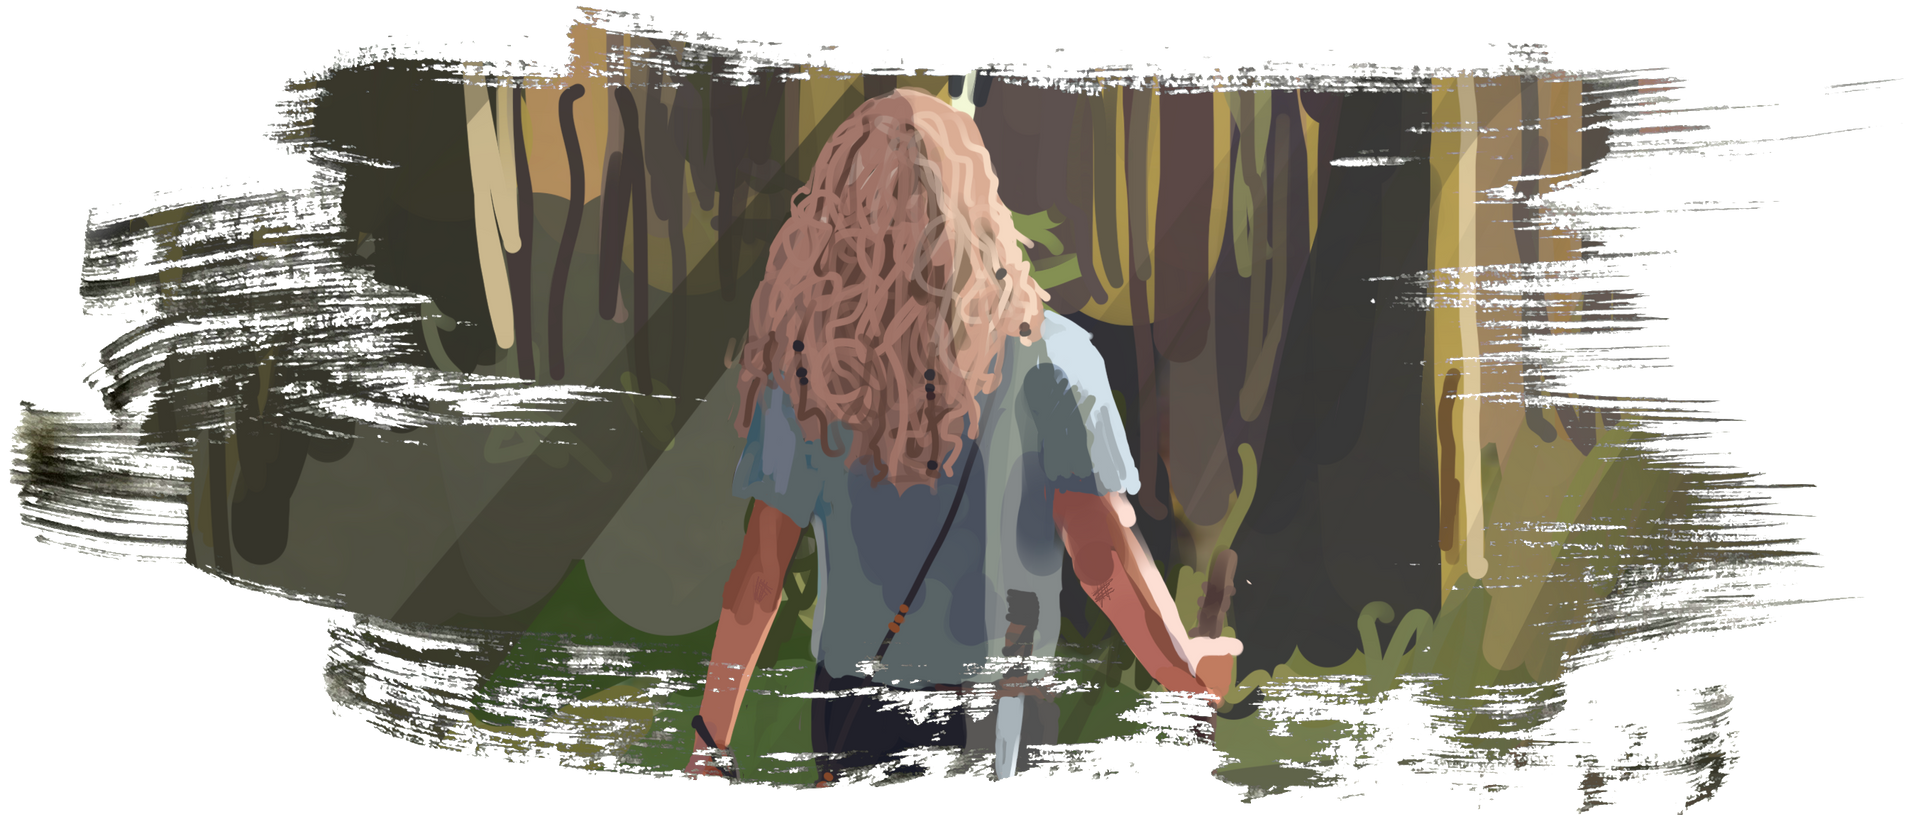 Illustration eines blonden, wandernden Mädchens im Wald